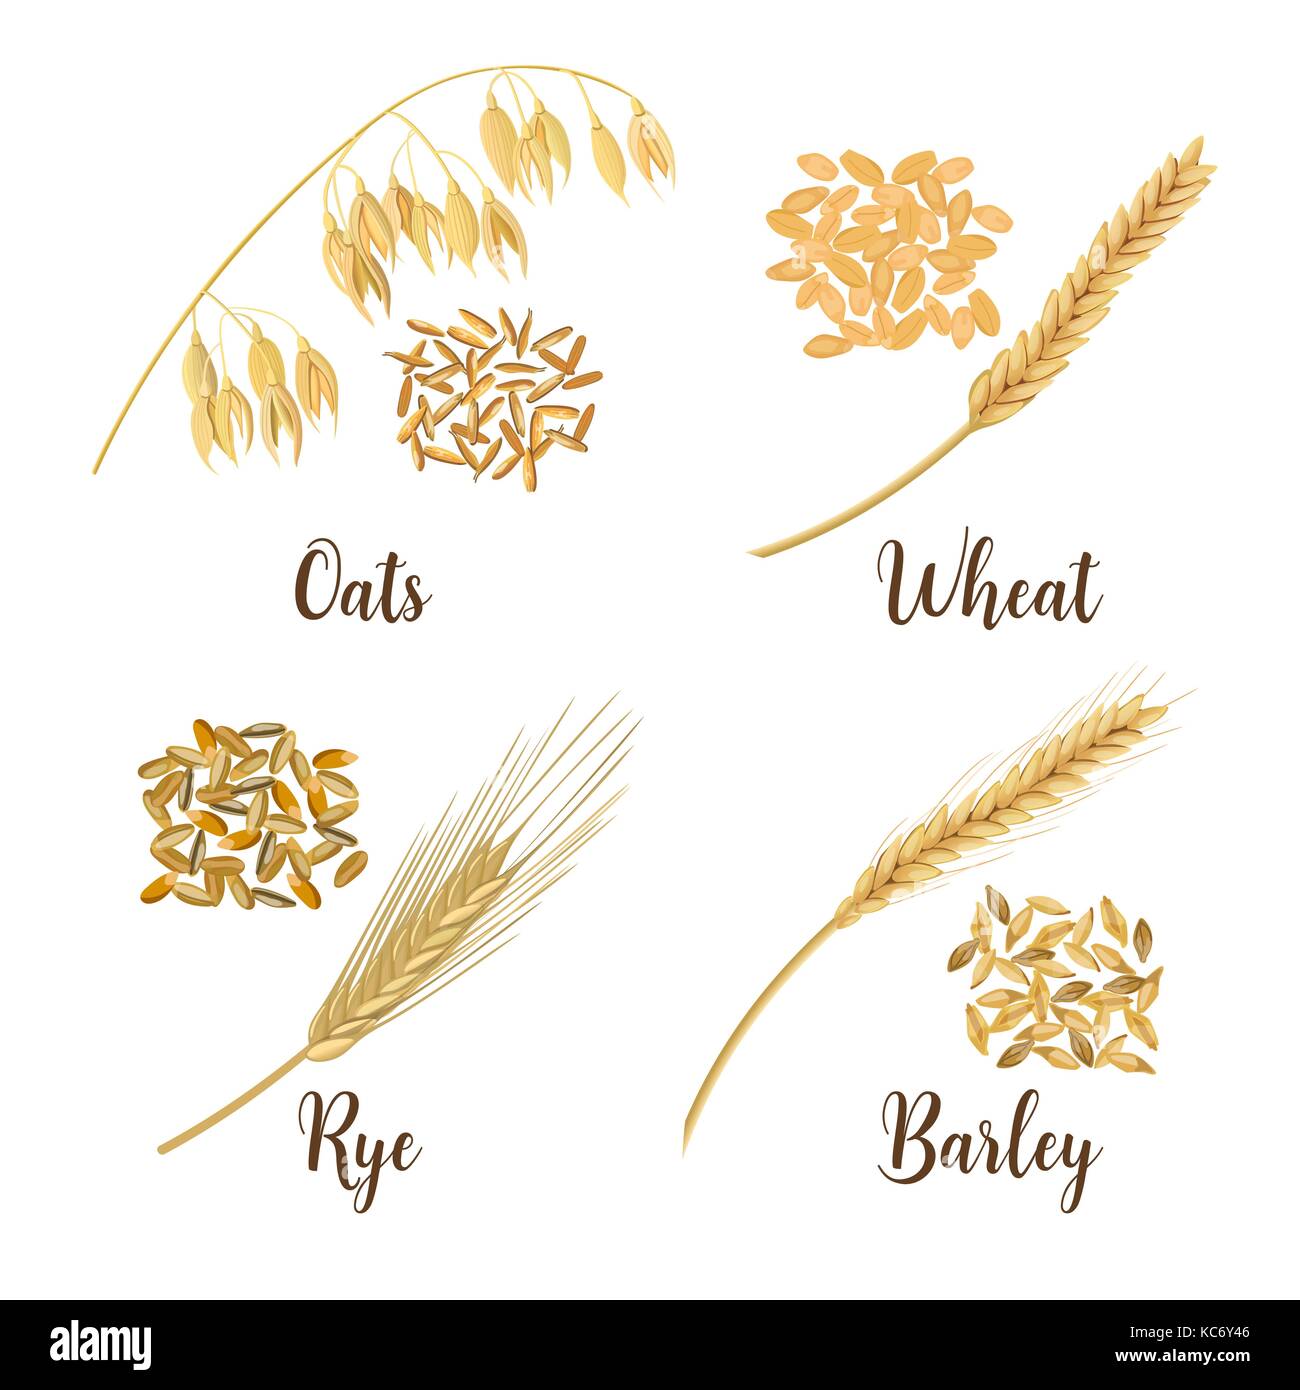 Weizen, Gerste, Hafer und Roggen Getreide 3d Symbol Vektor einrichten. Vier Getreide Körner und Ohren Stock Vektor